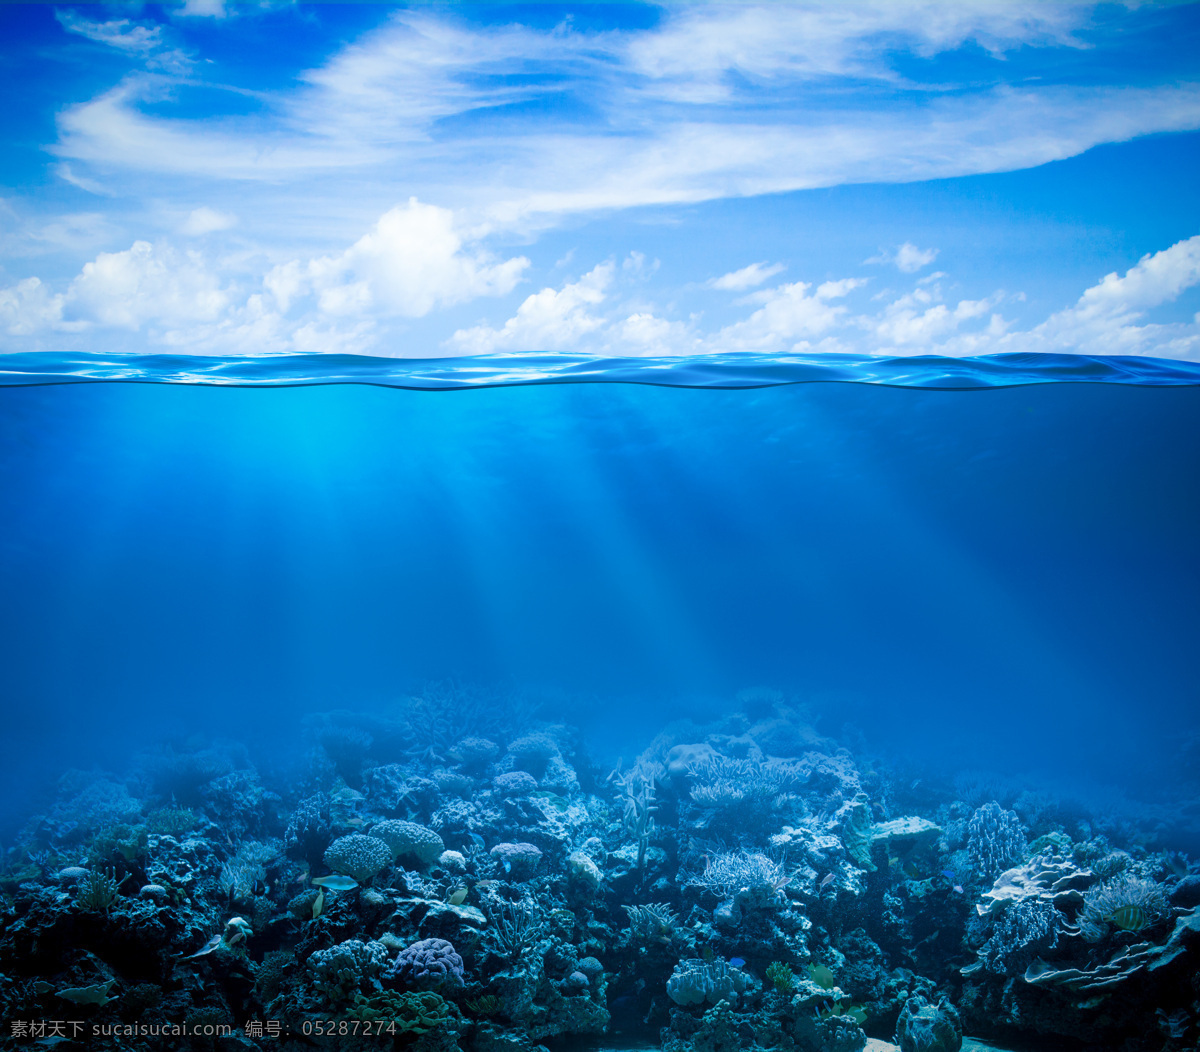 蓝色海底世界 海底世界 海底 海底素材 大海 海水 海底世界图片 珊瑚 海洋 生物世界 动物图片 海洋生物 风景图片 大海图片 自然景观